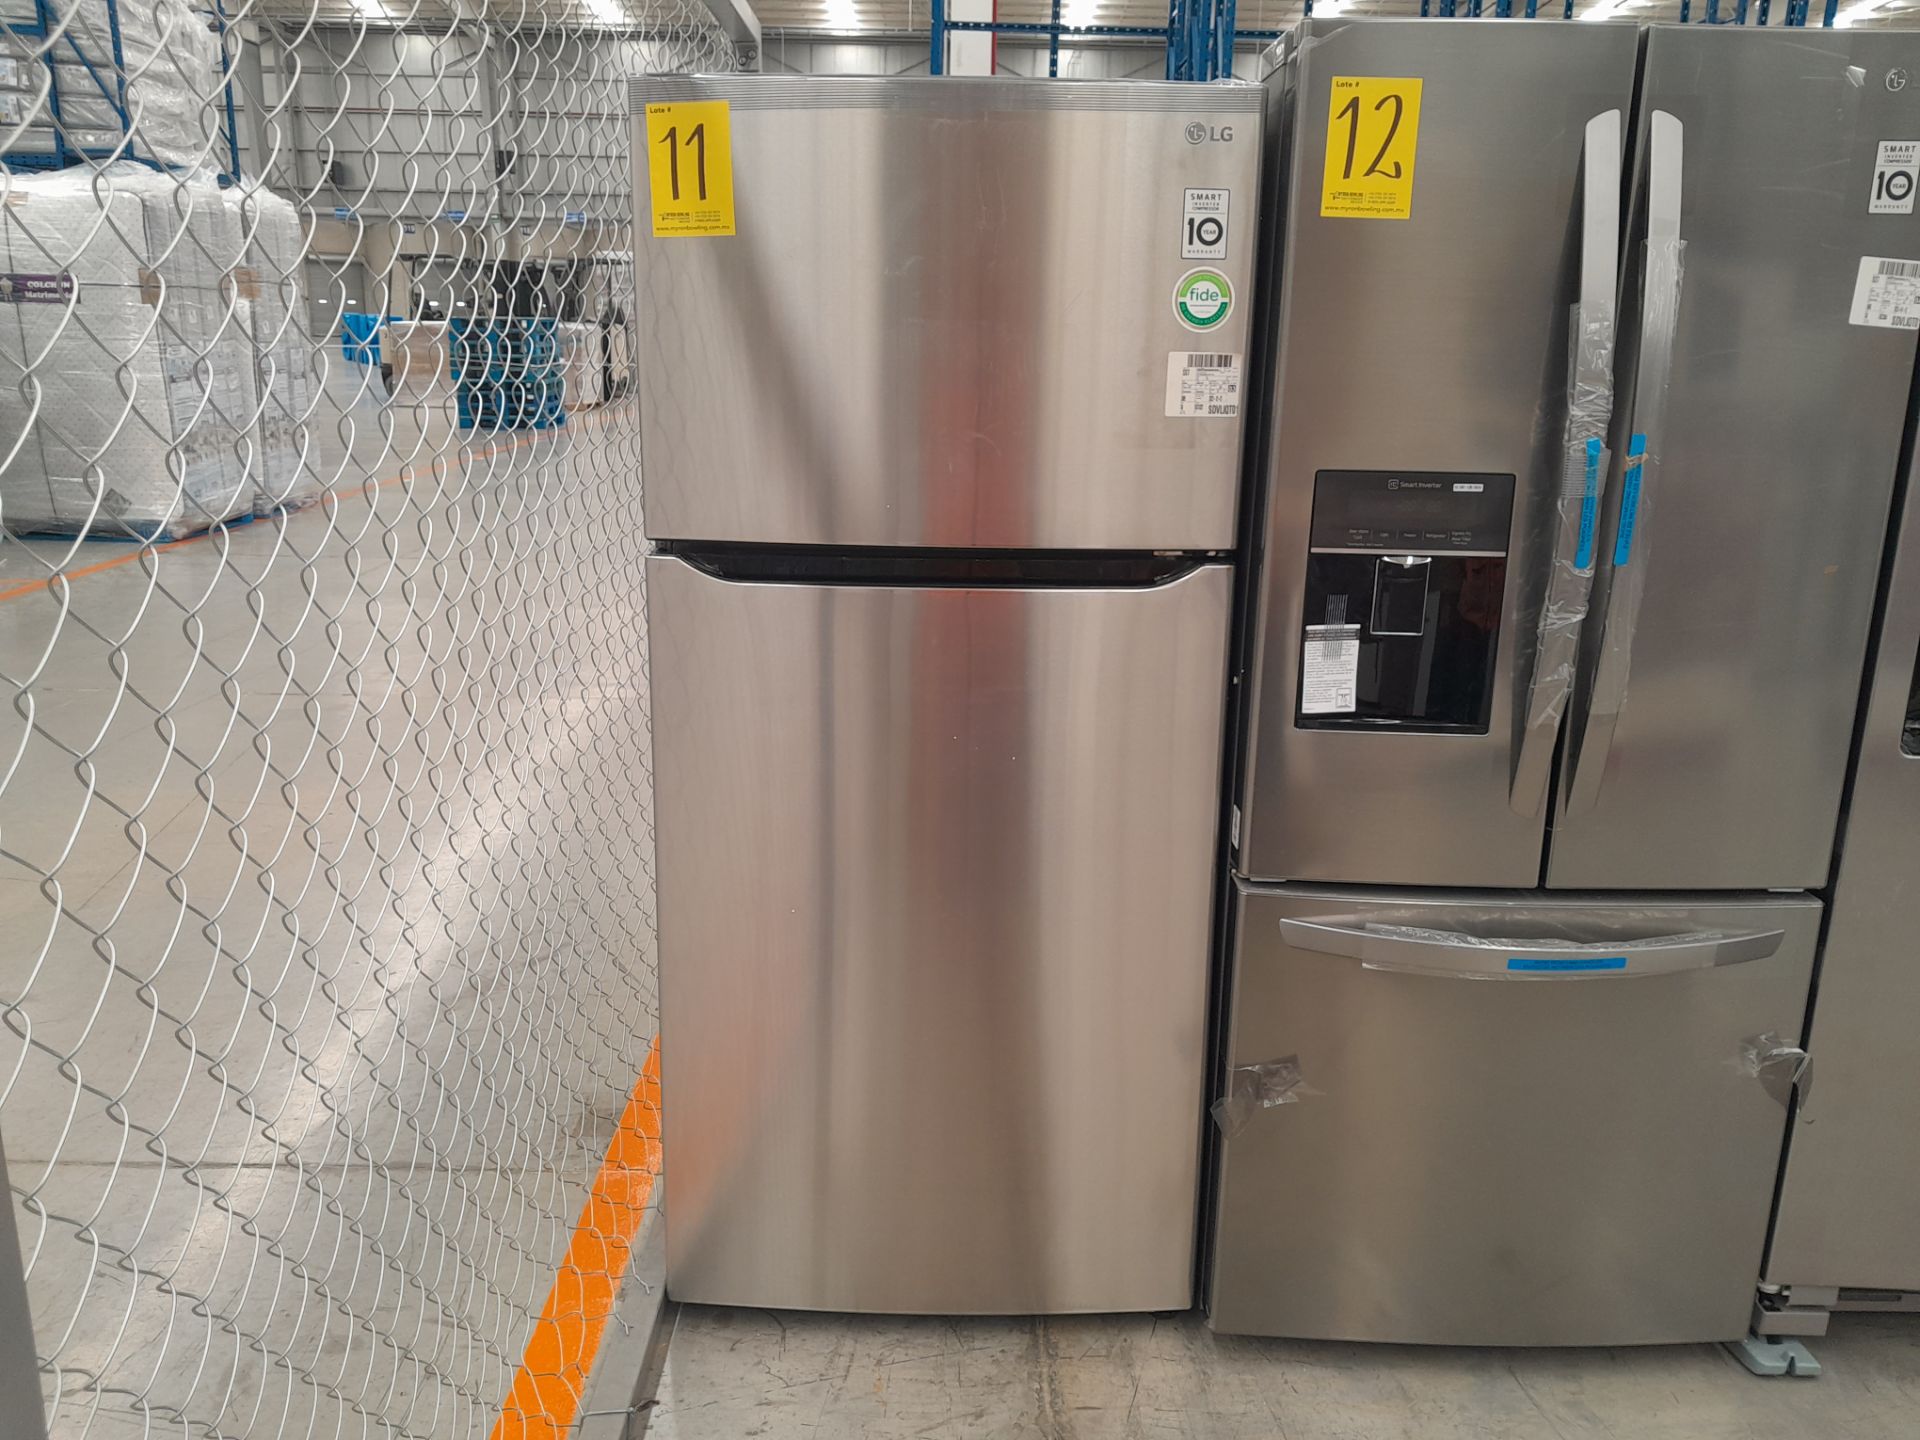 (NUEVO) Lote de 1 Refrigerador Marca LG, Modelo LT57BPSX, Serie F30468, Color GRIS